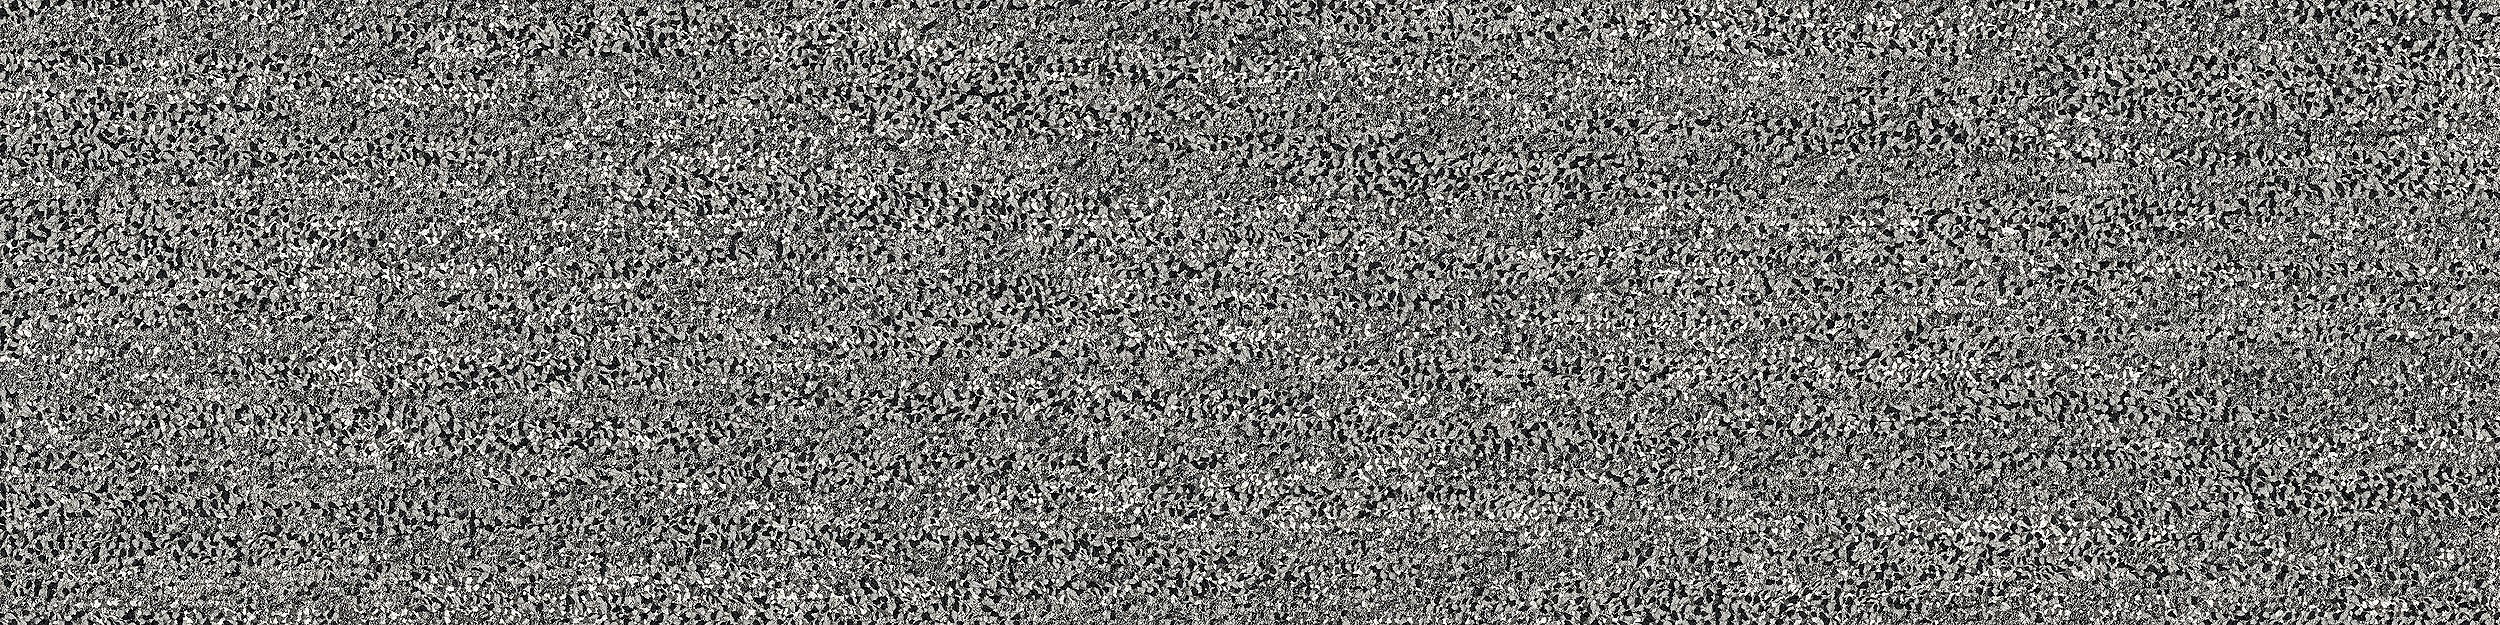 Mantle Rock Carpet Tile In Grey Stone image number 7